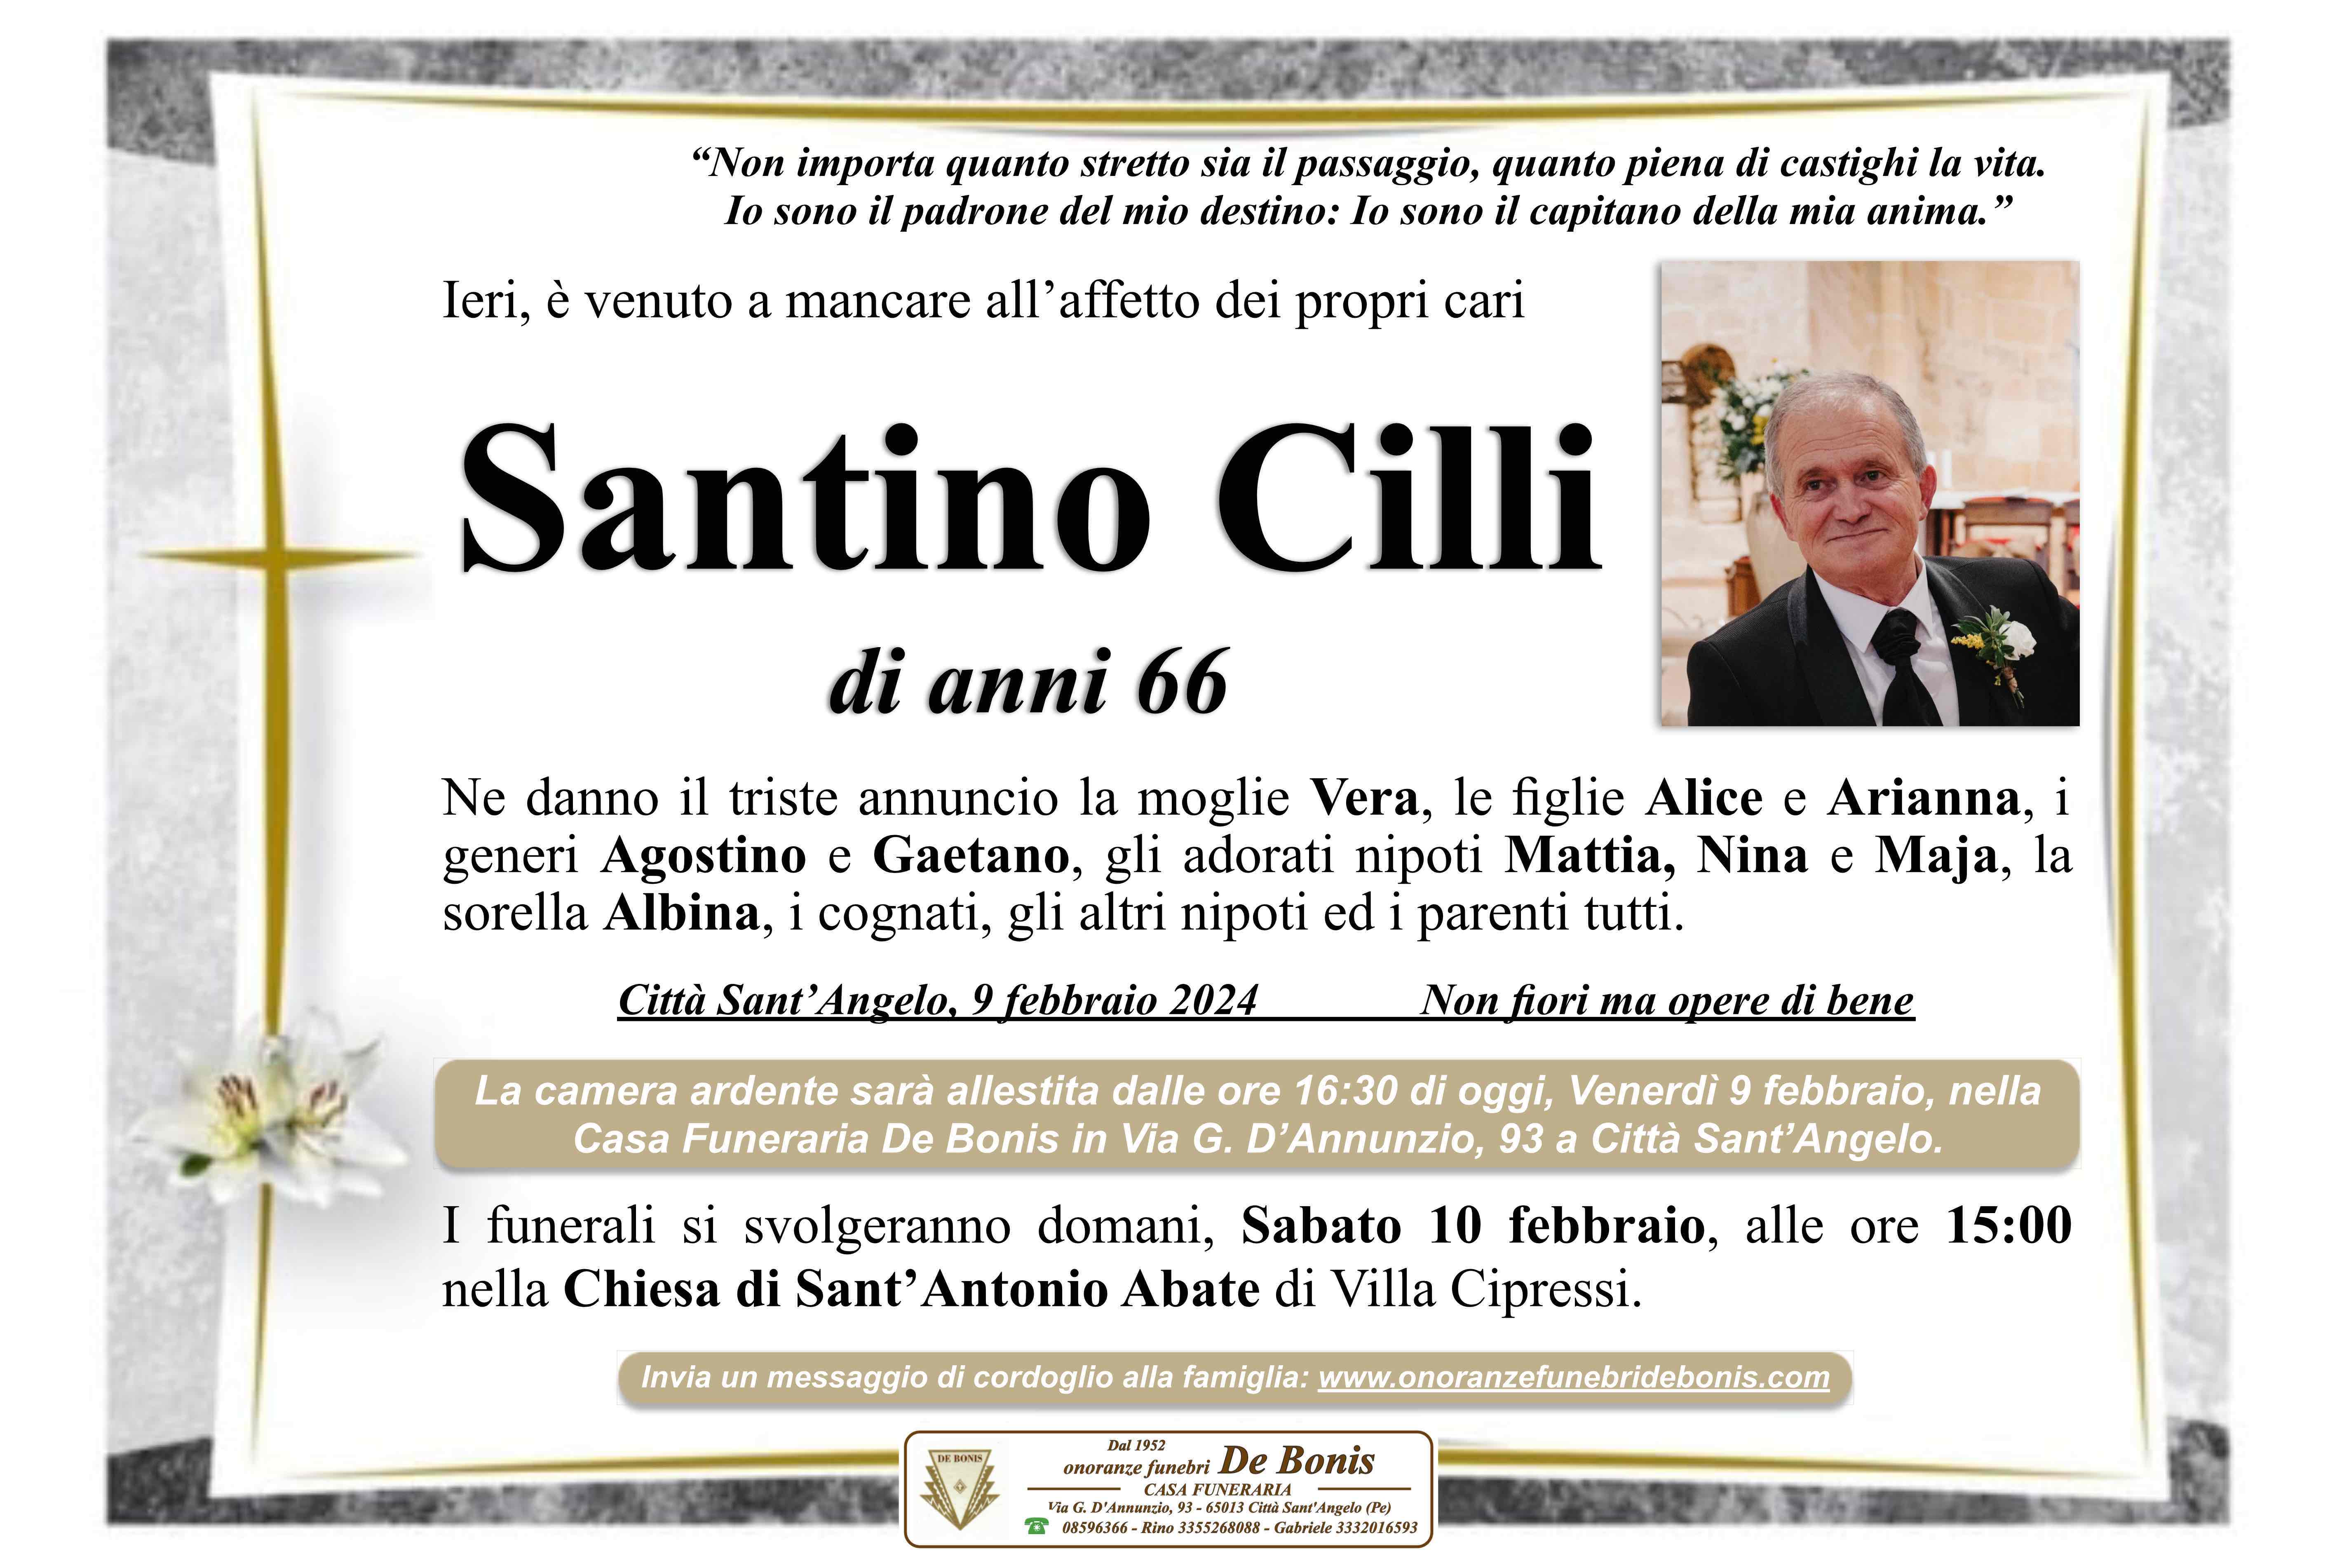 Santino Cilli